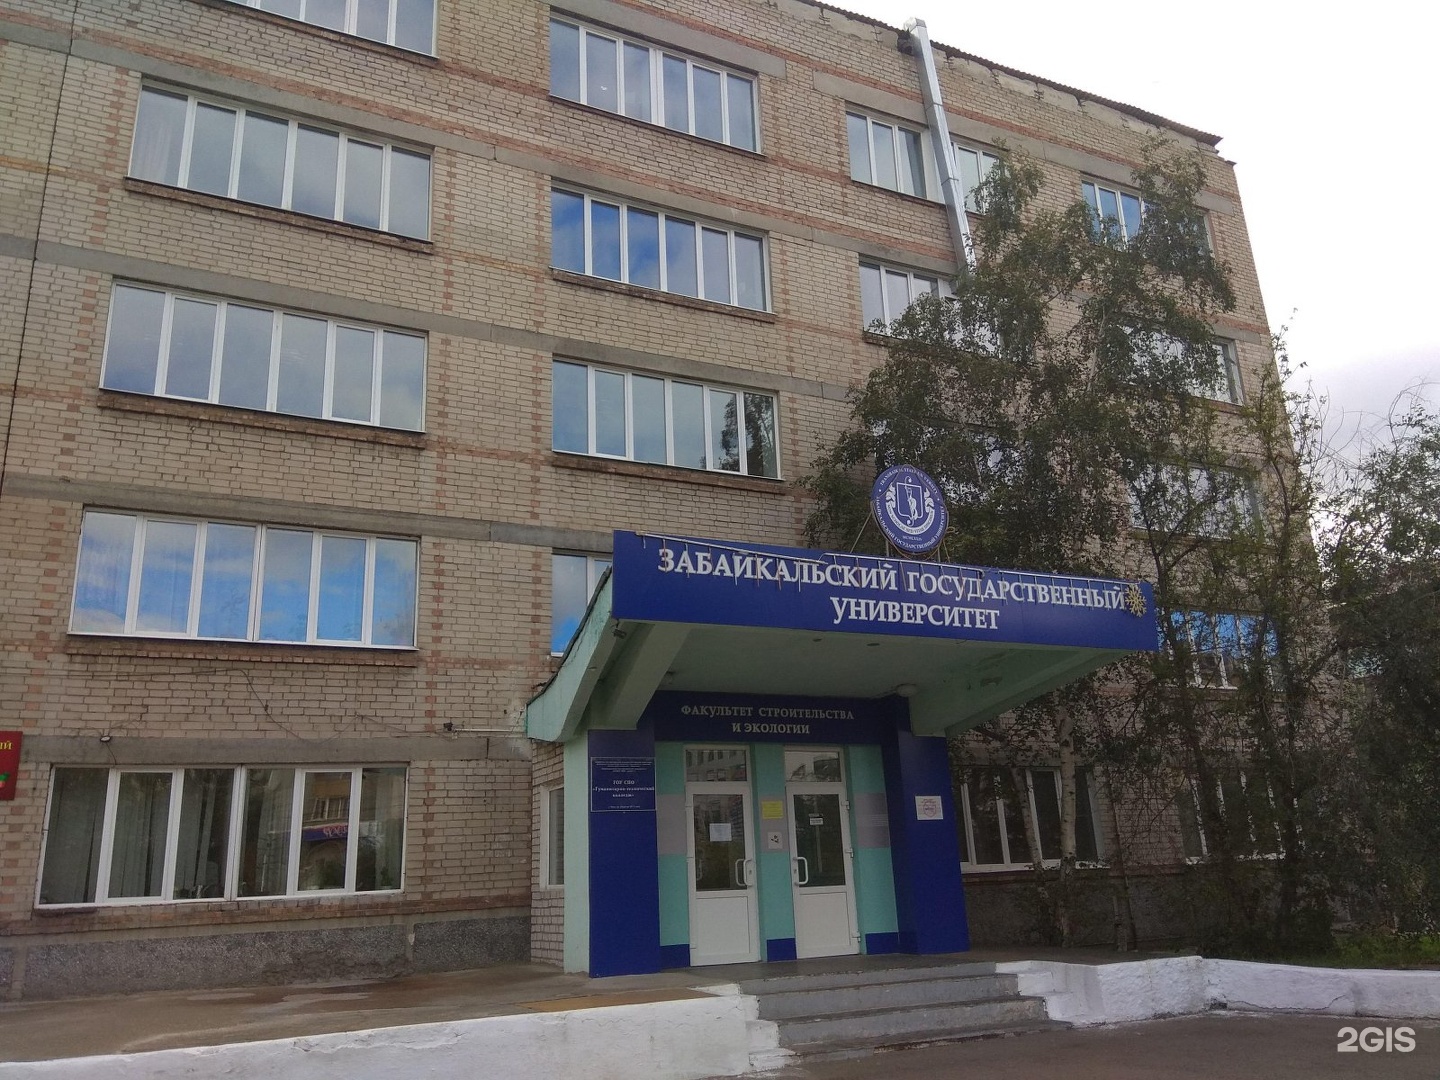 Забайкальский университет сайт